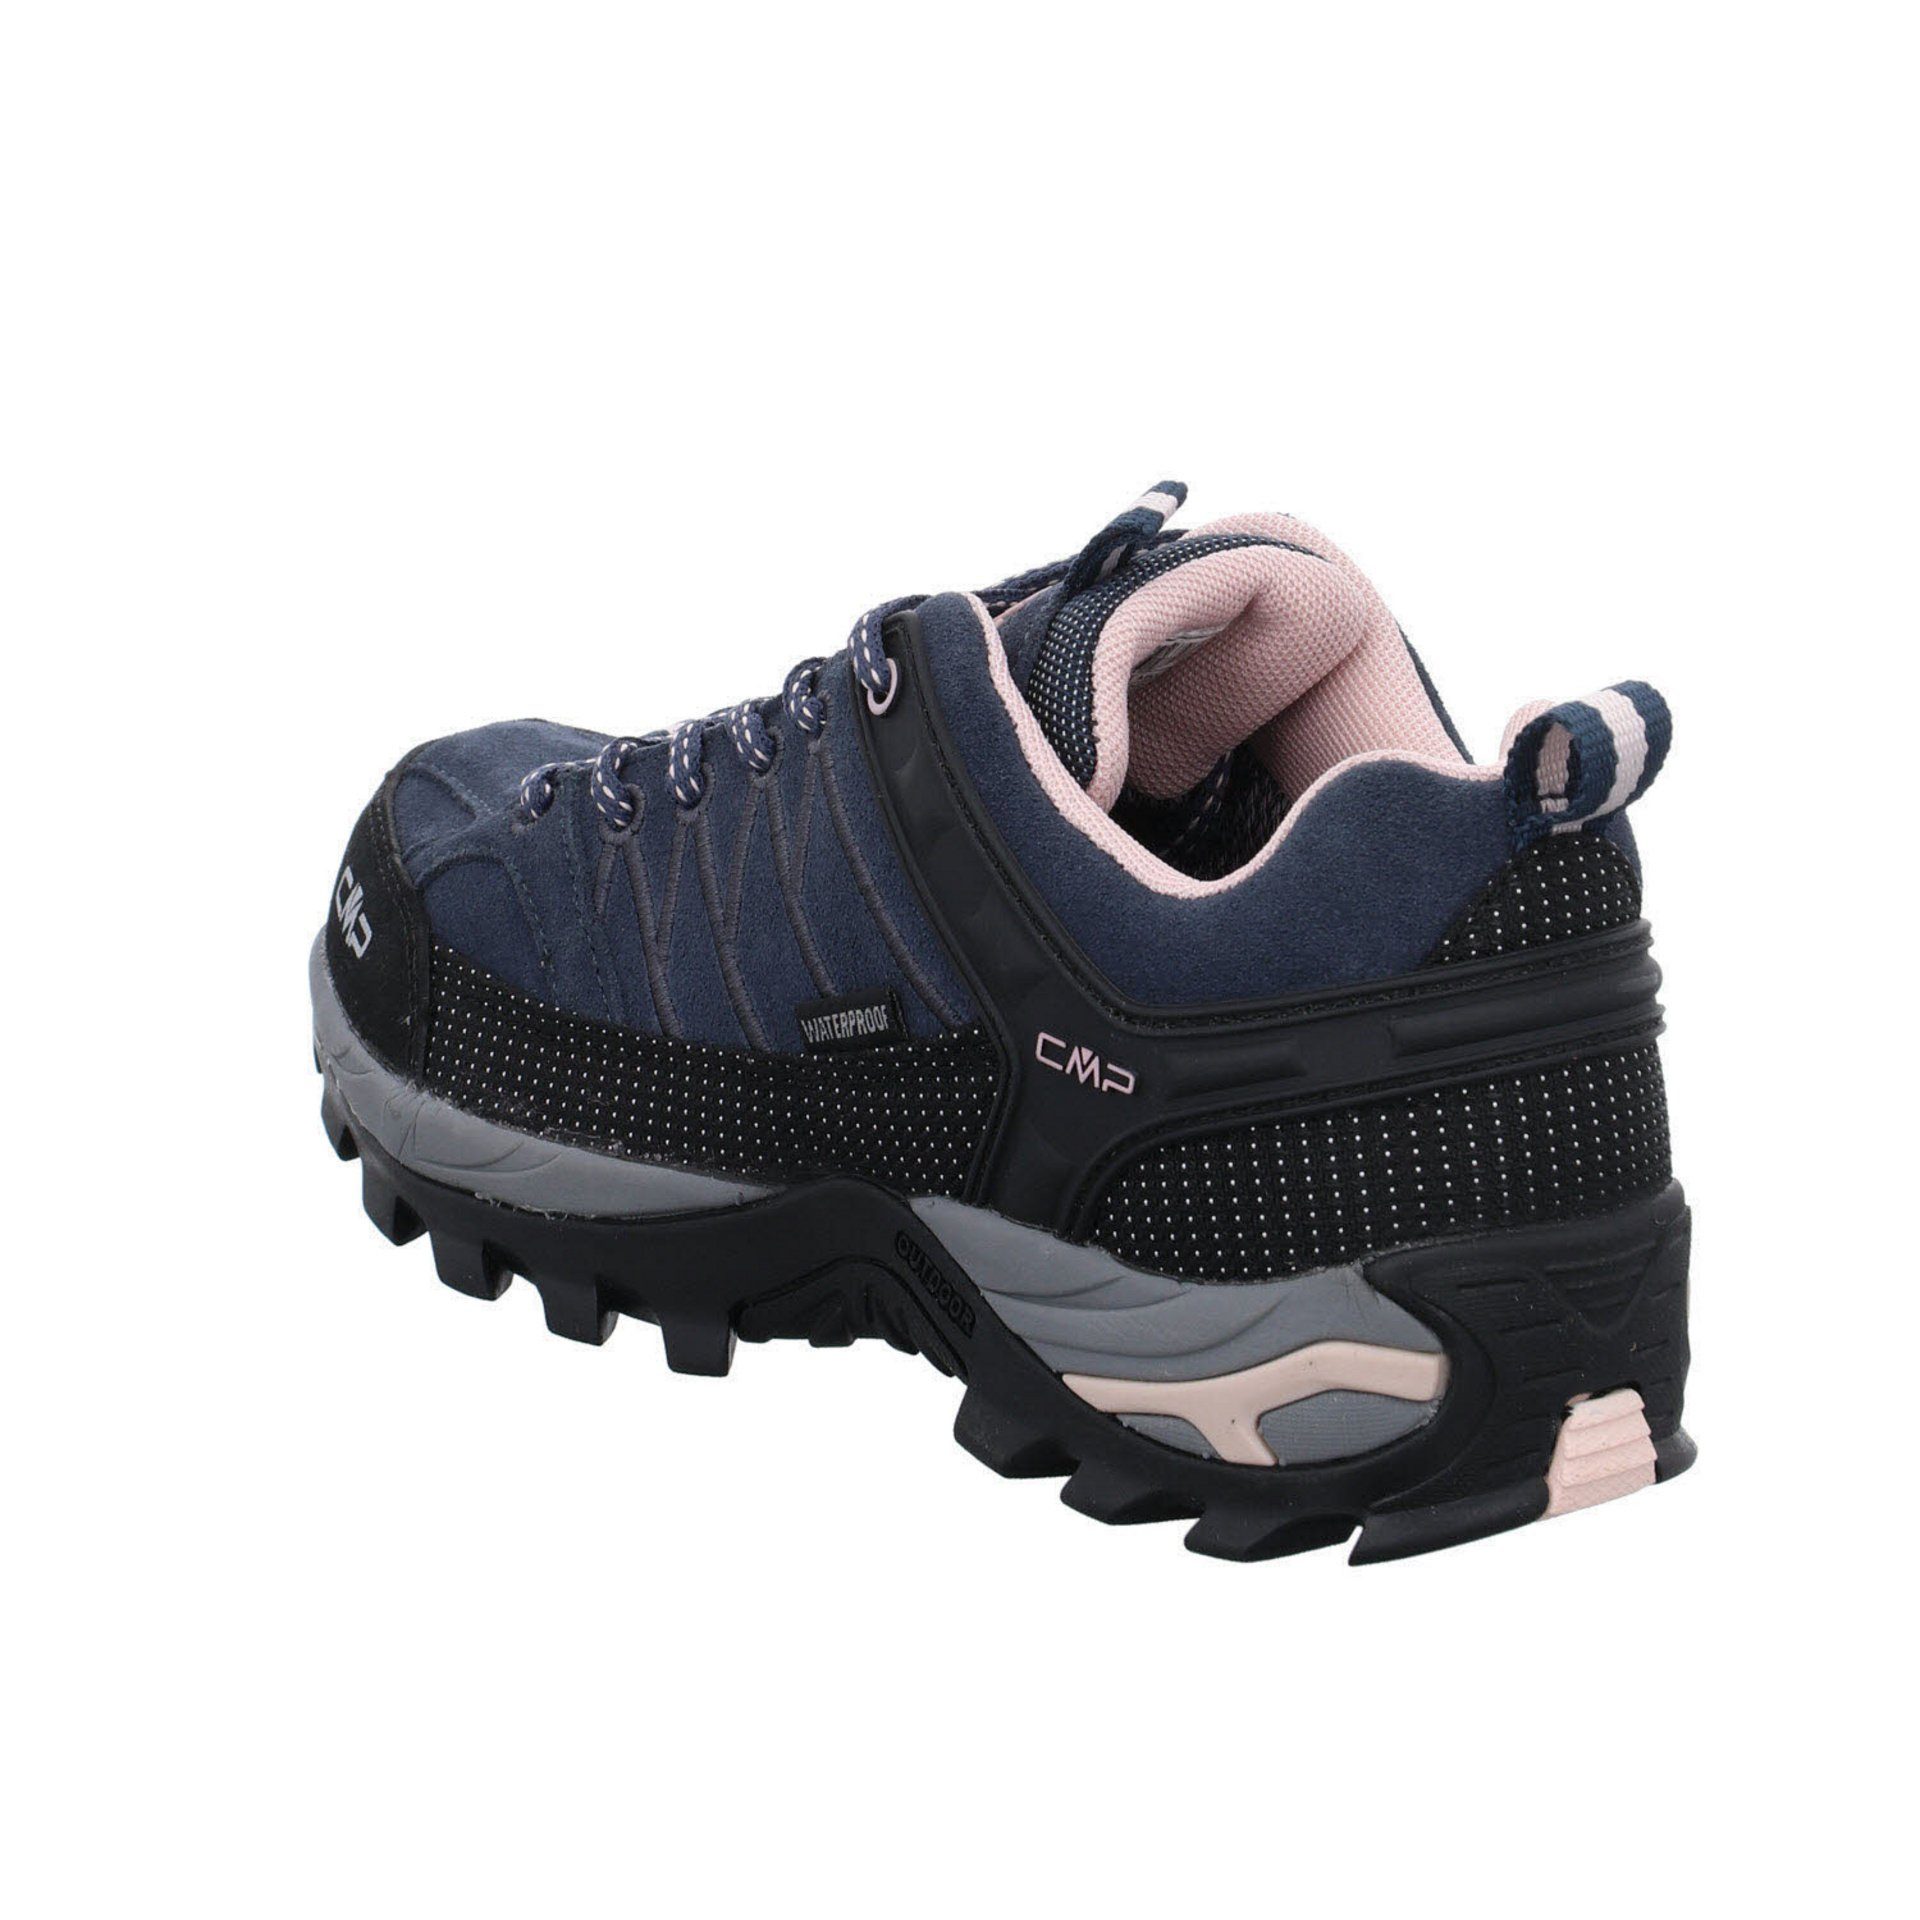 (201) Low Schuhe Damen CMP Leder-/Textilkombination Riegel Outdoorschuh anthrazit Outdoorschuh Outdoor